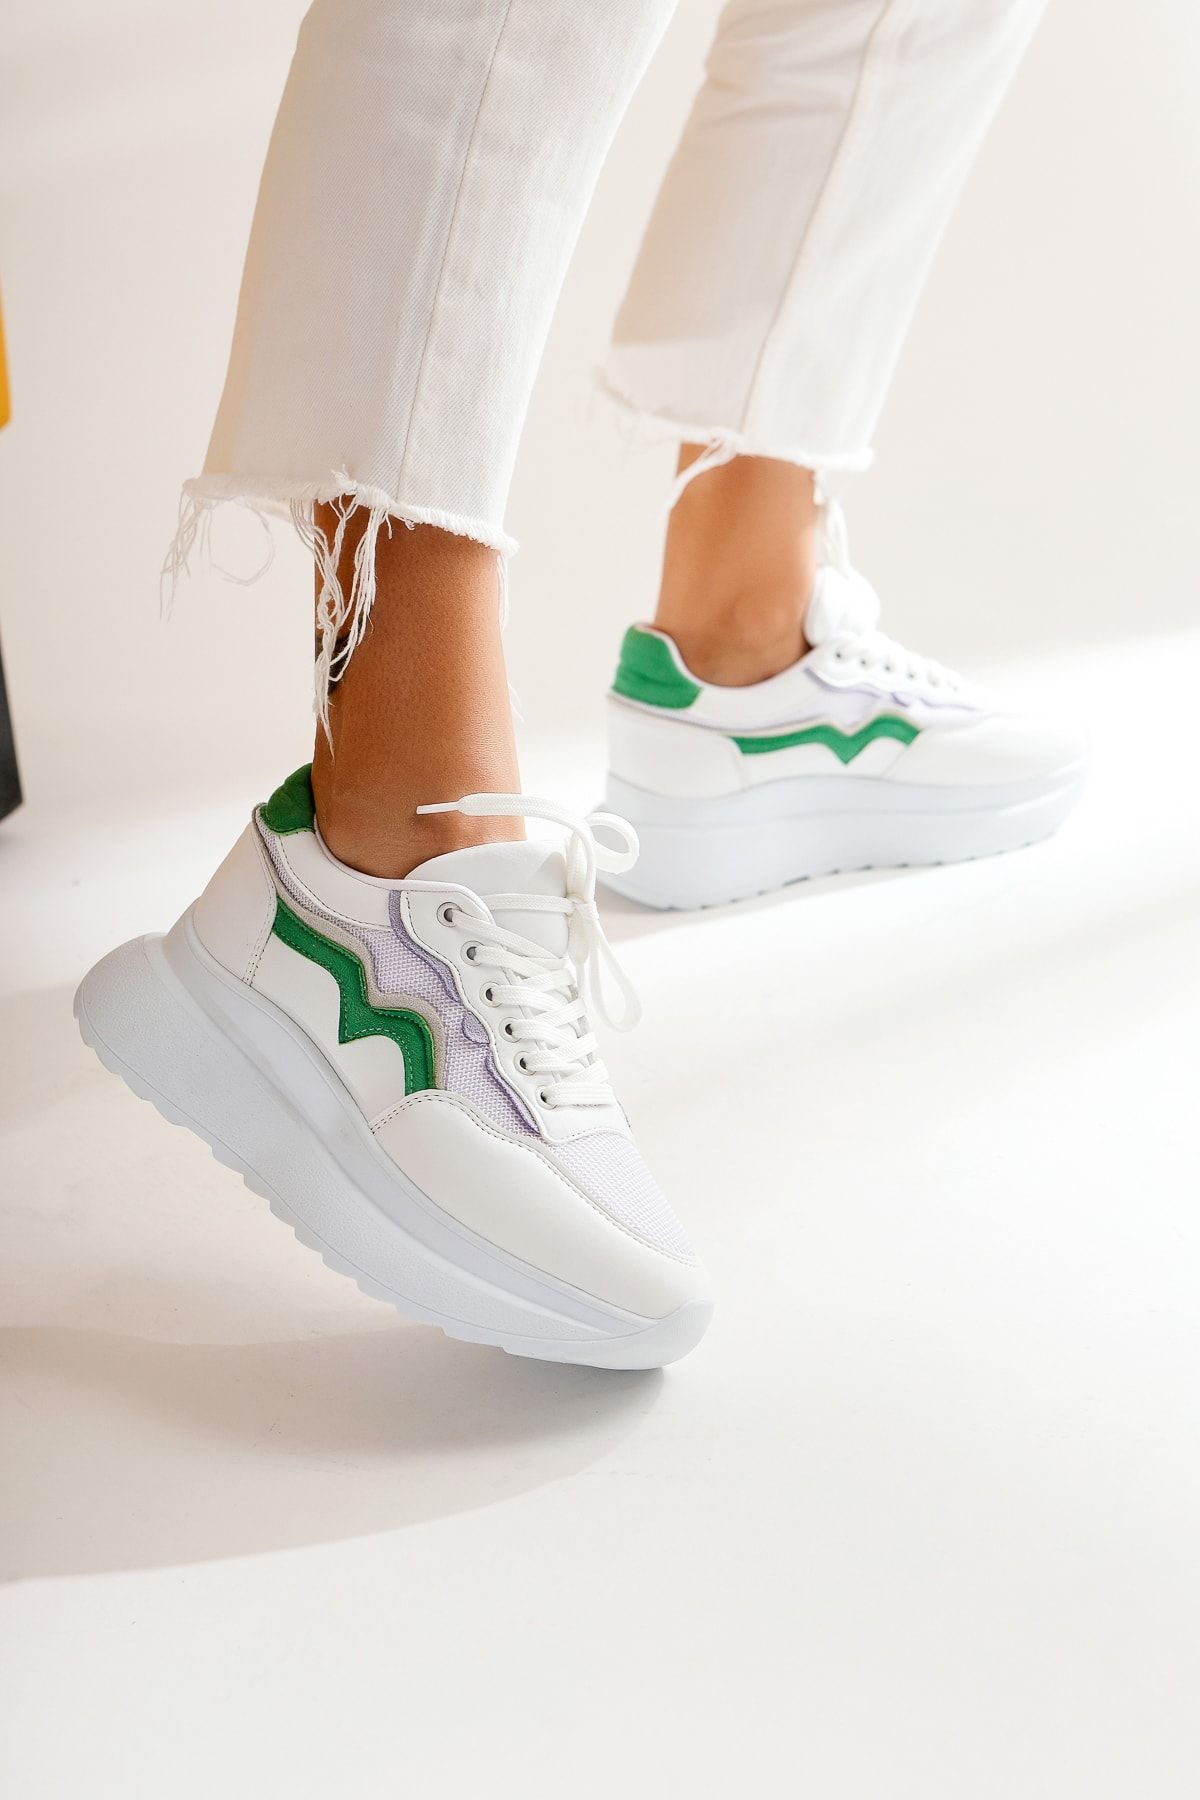 Limoya Vanna Beyaz Yeşil Kalın Tabanlı Spor Ayakkabı